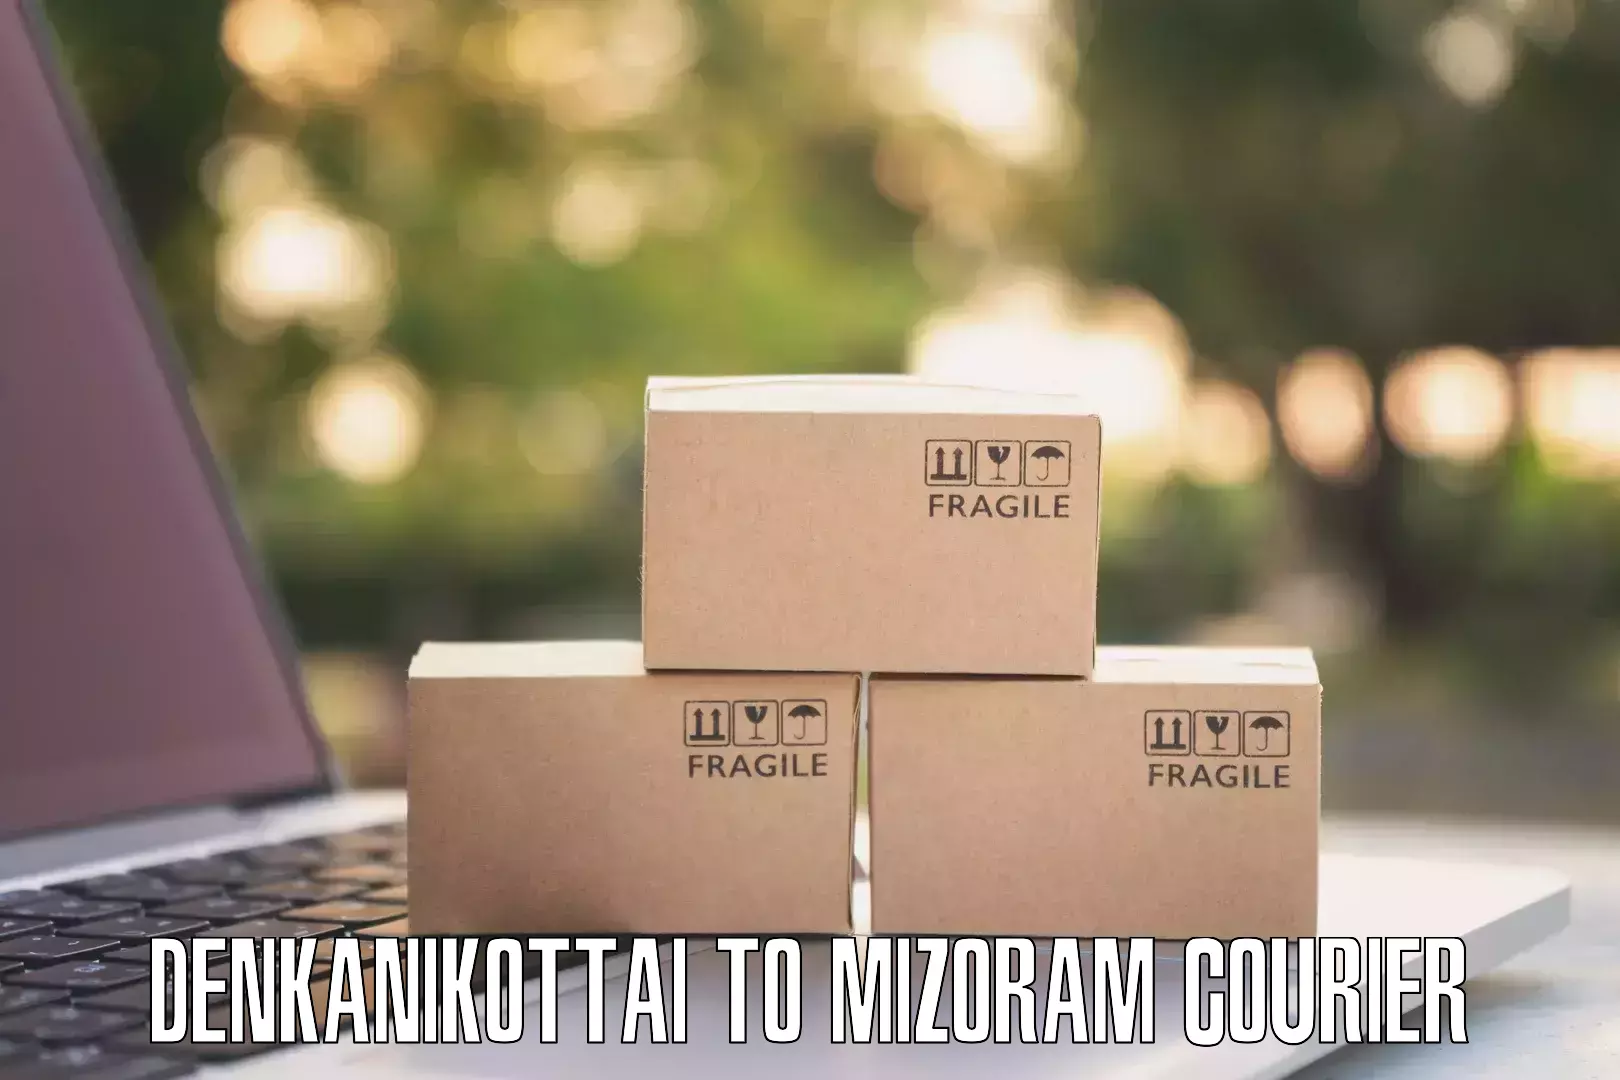 Residential courier service Denkanikottai to Saitual